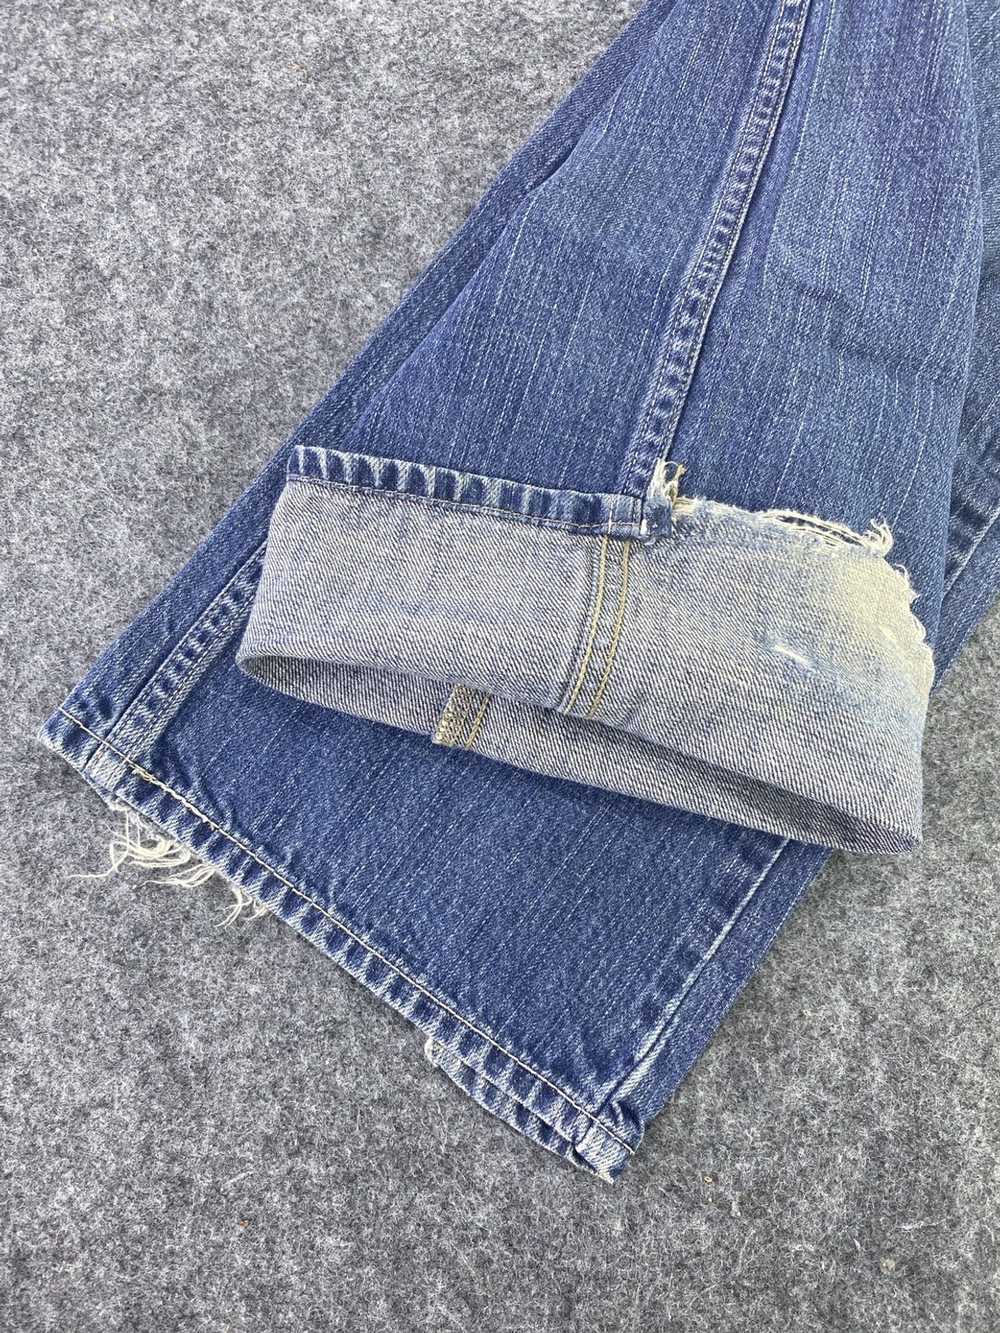 Jean × Levi's × Vintage Vintage Levis 507 Jeans B… - image 8